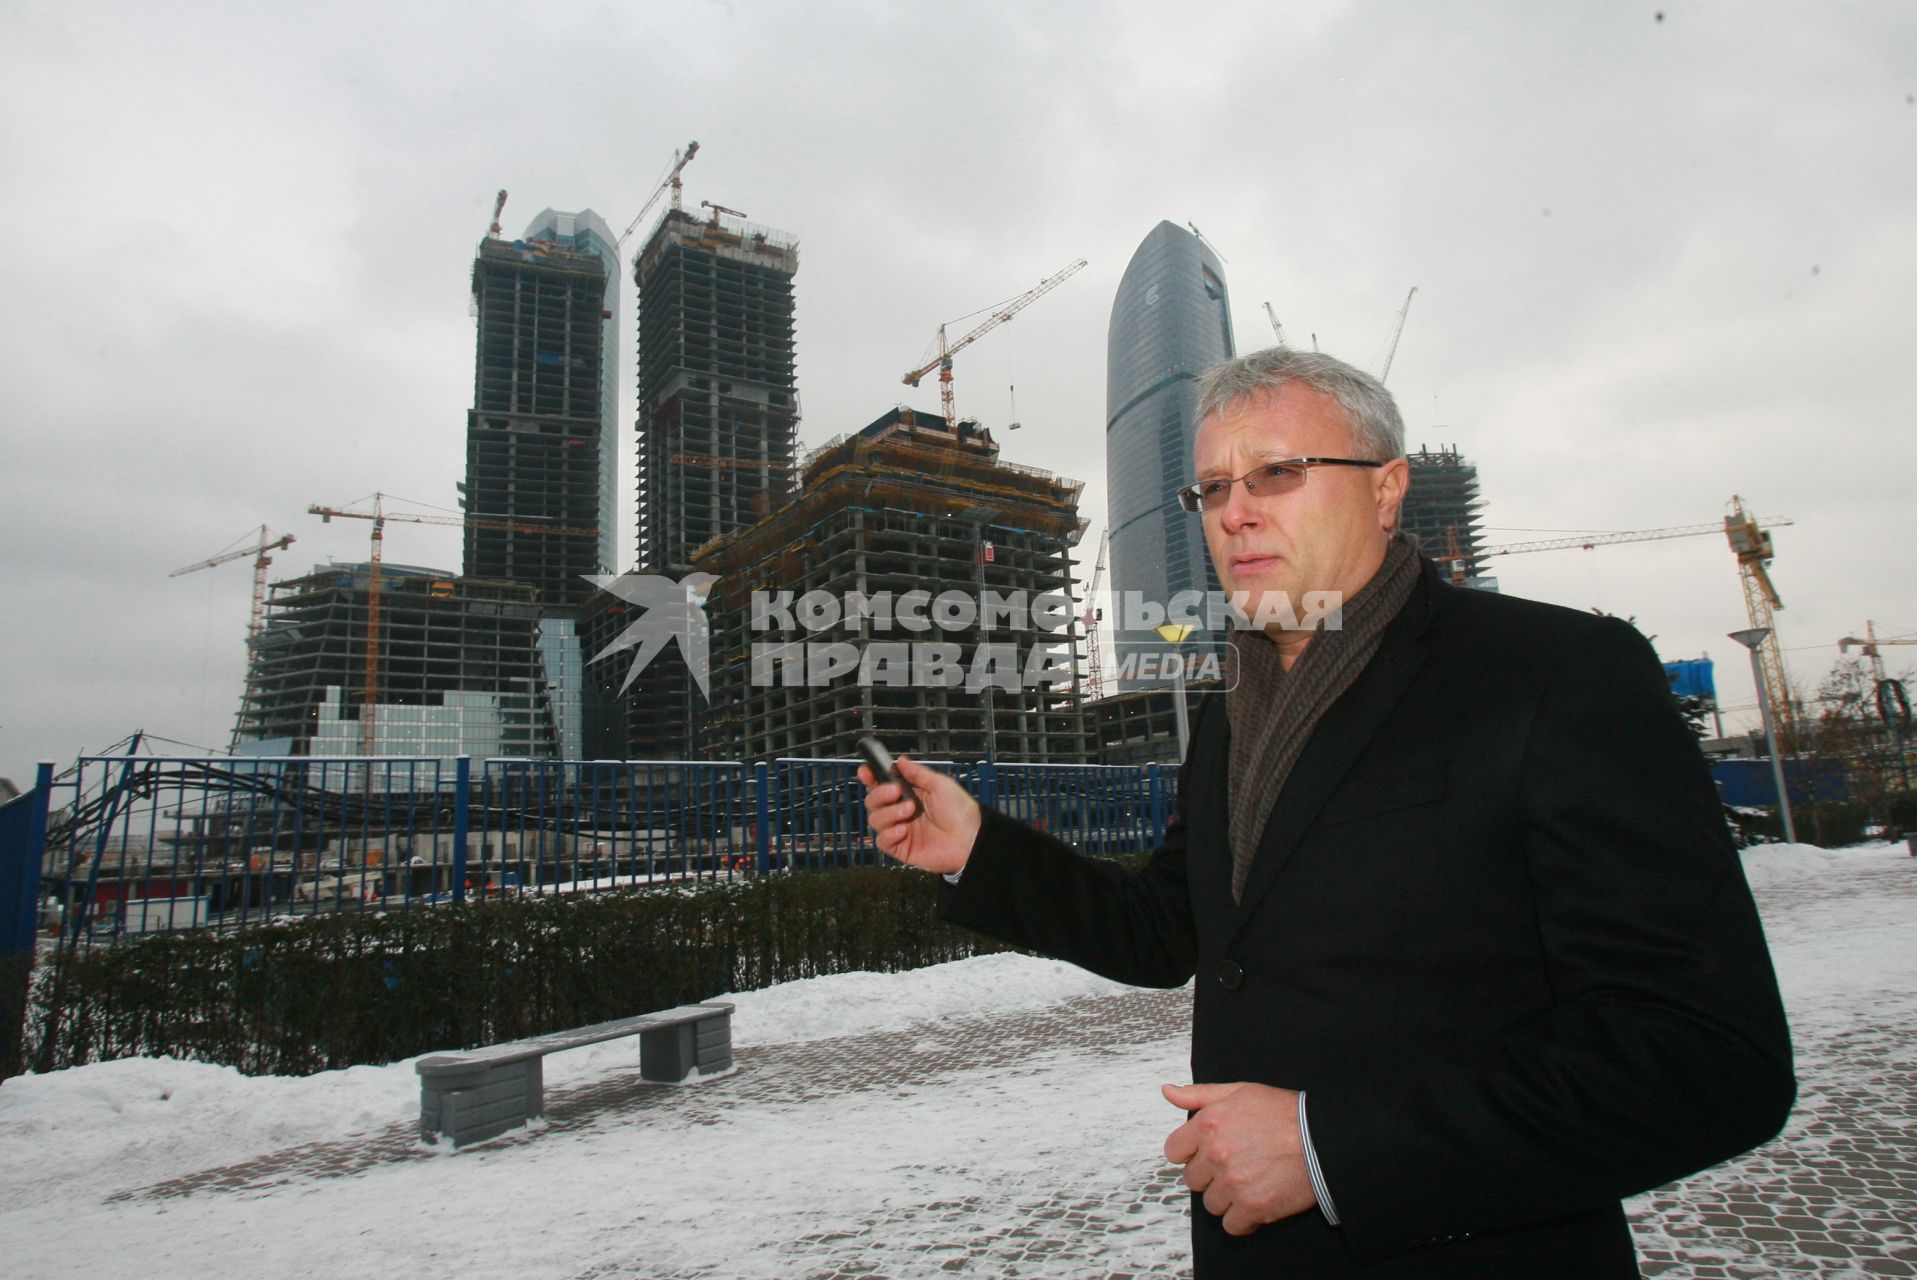 Российский предприниматель, бизнесмен Александр Лебедев напротив строящегося СИТИ. 13 декабря 2007 года.